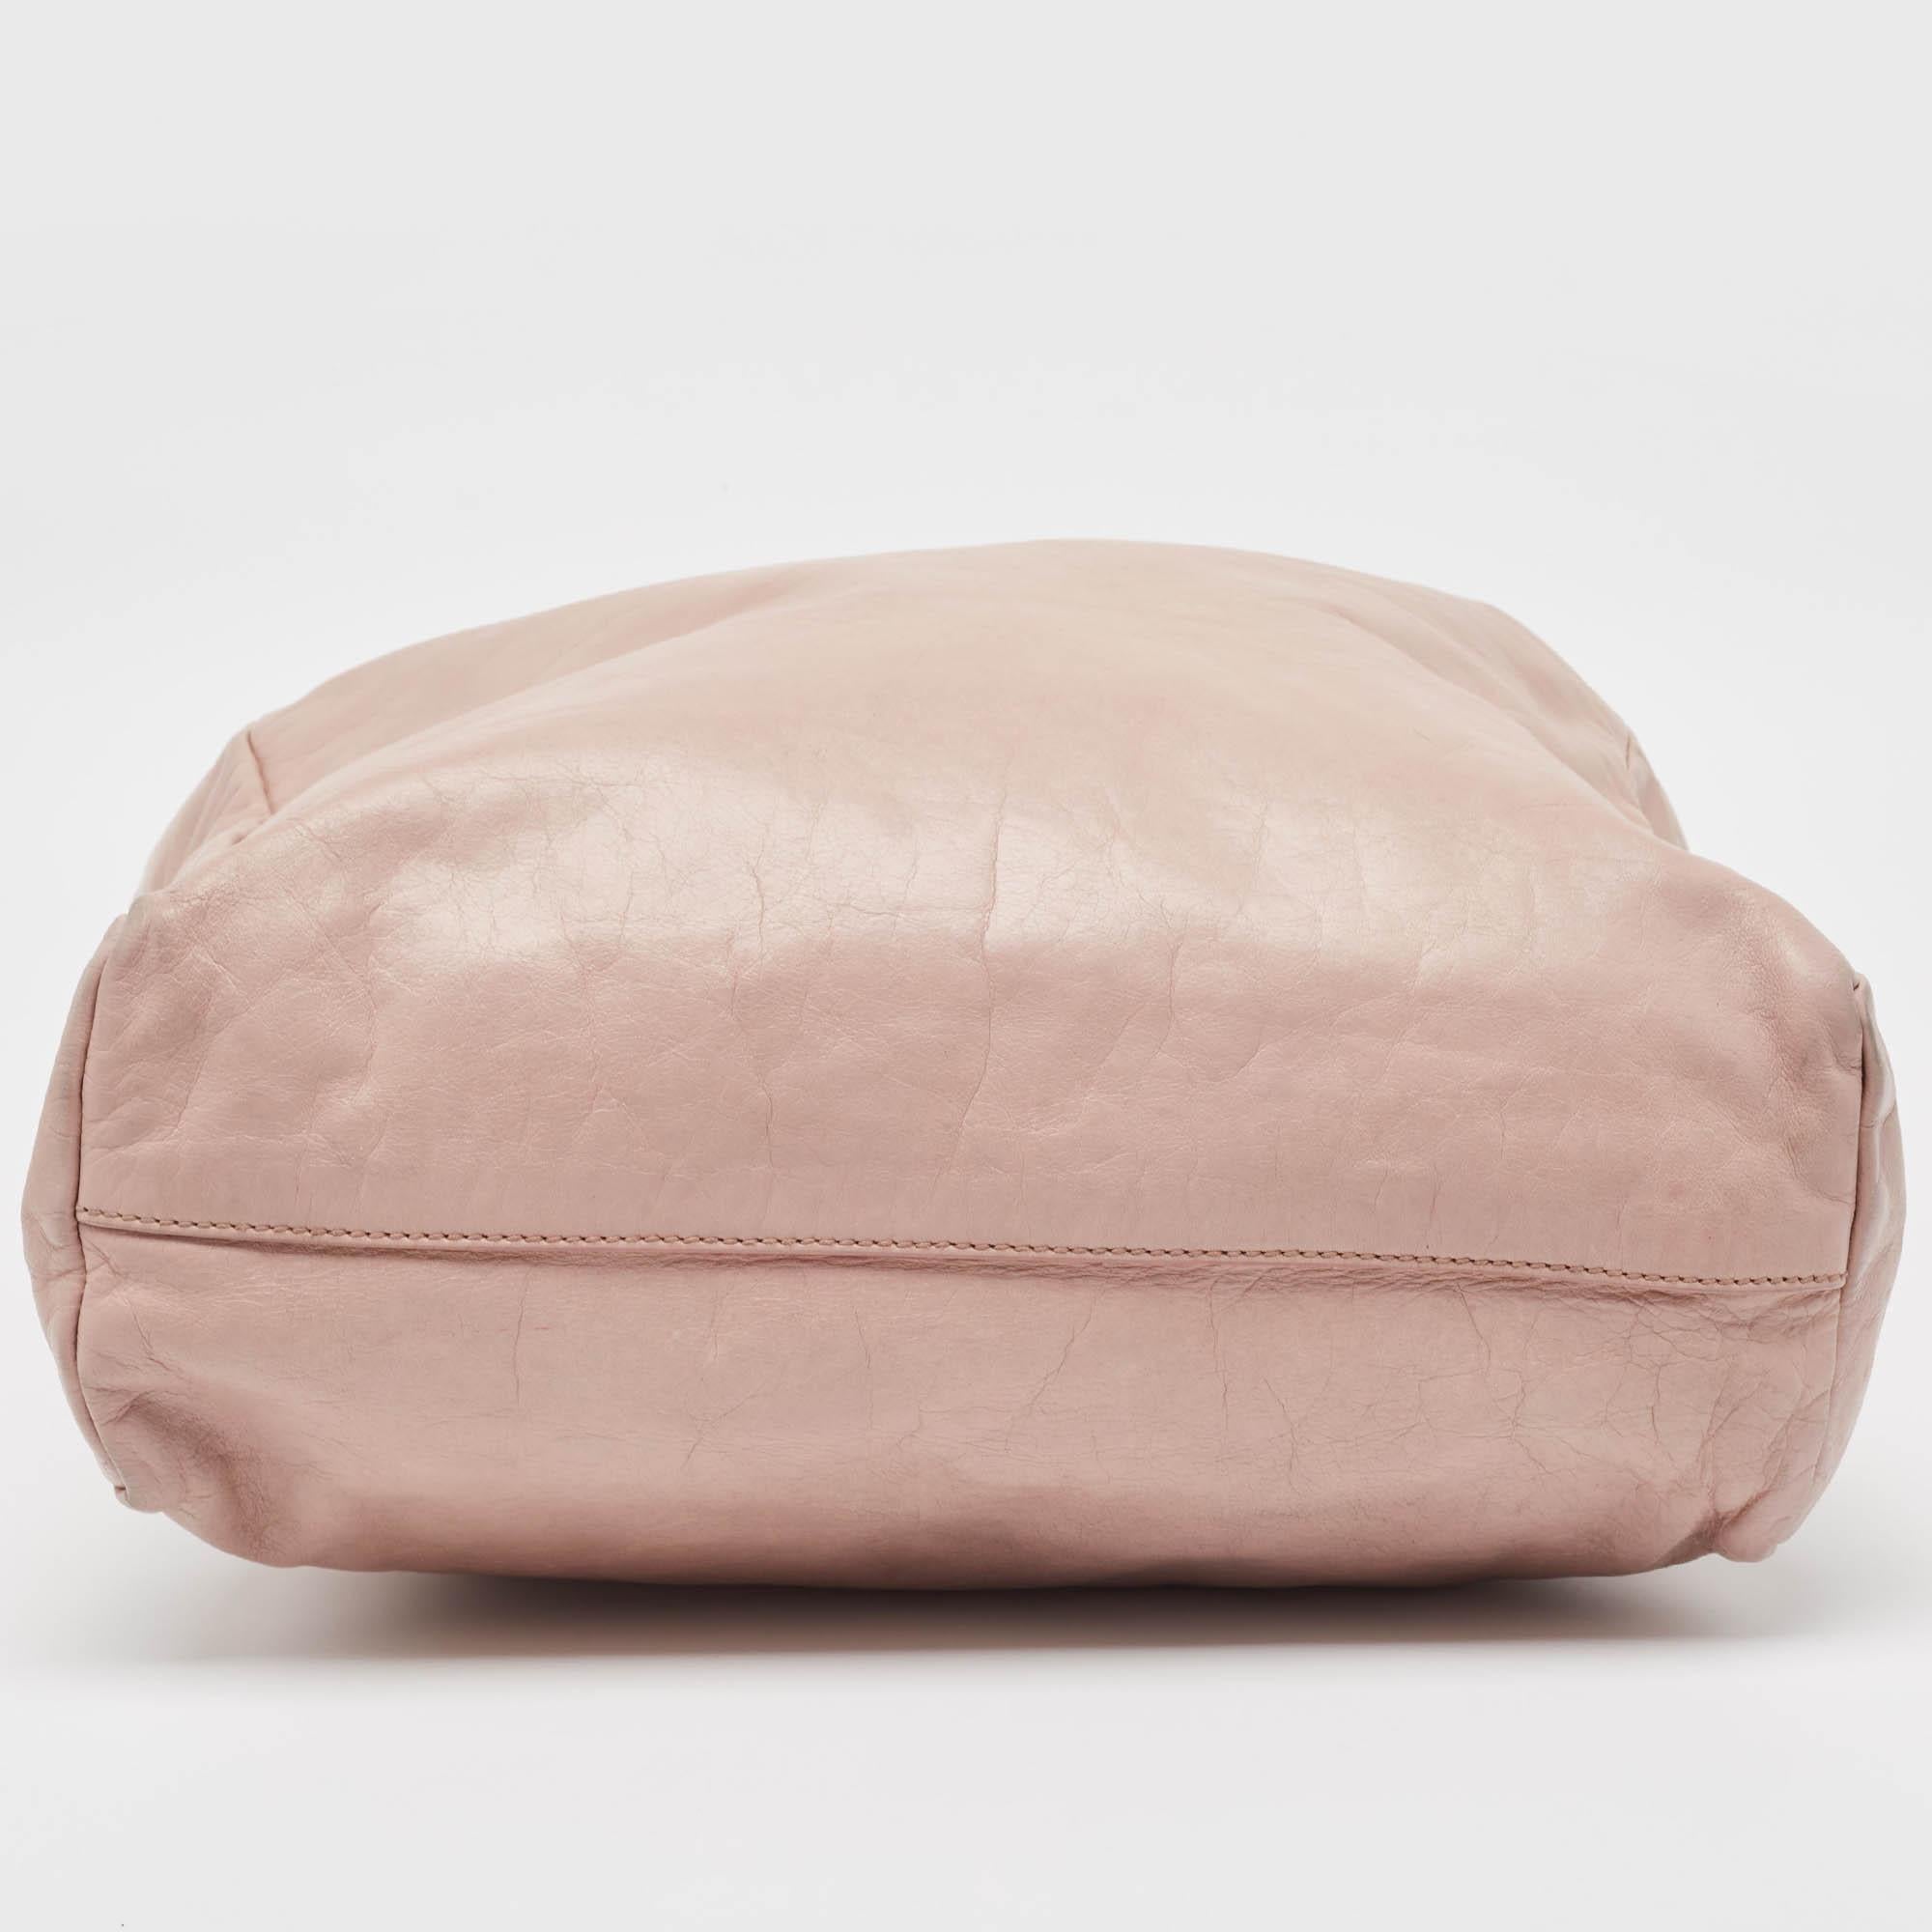 Miu Miu Light Pink Leather Shopper Tote For Sale 10